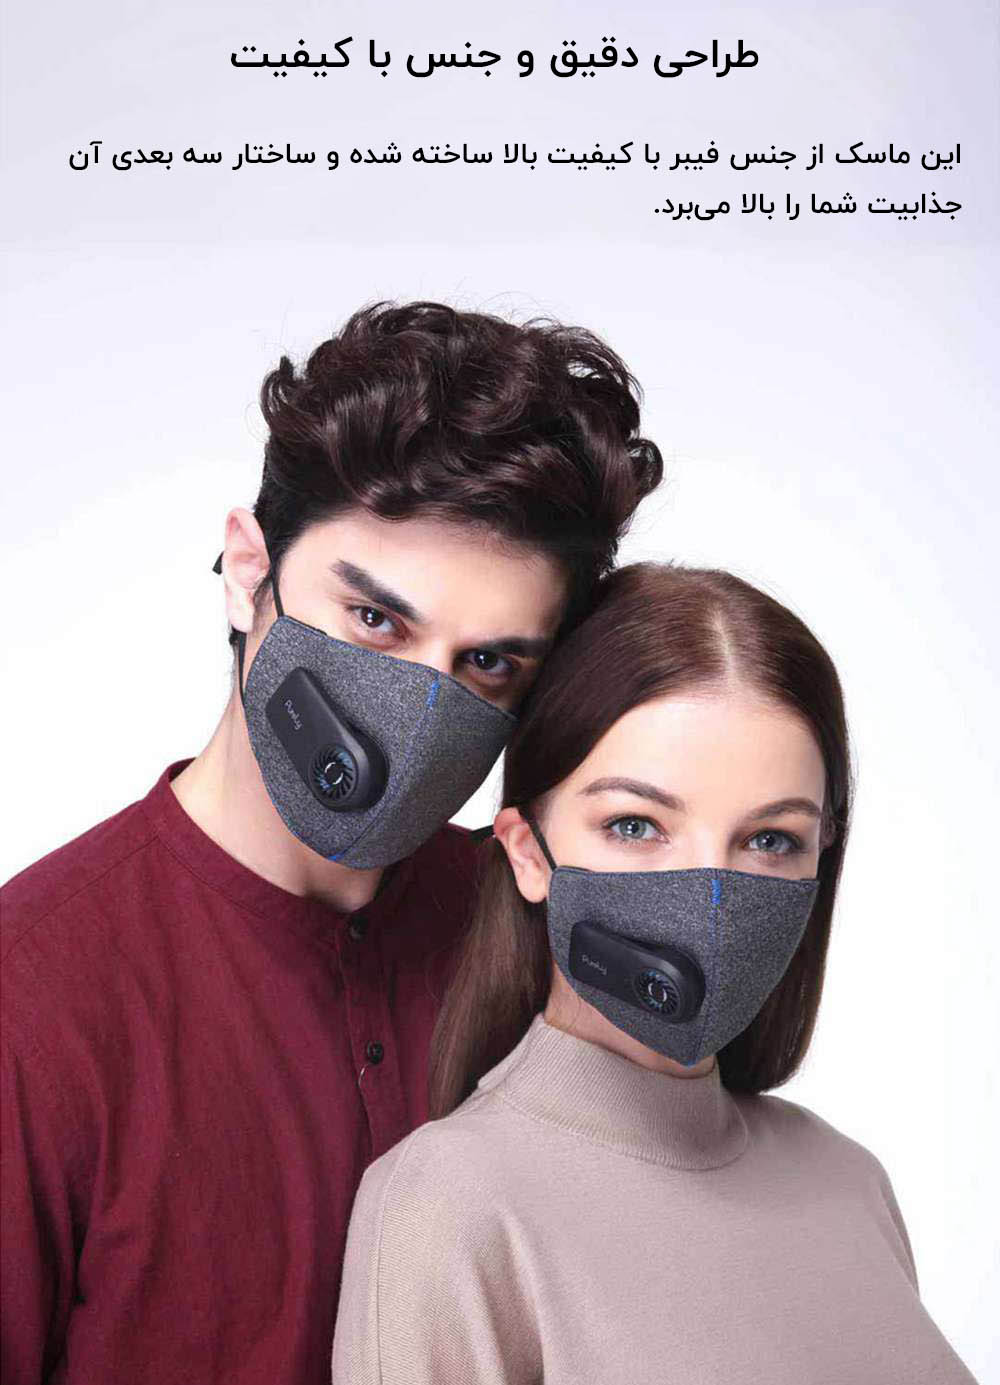 ماسک تنفسی فن دار شیائومی مدل Purely